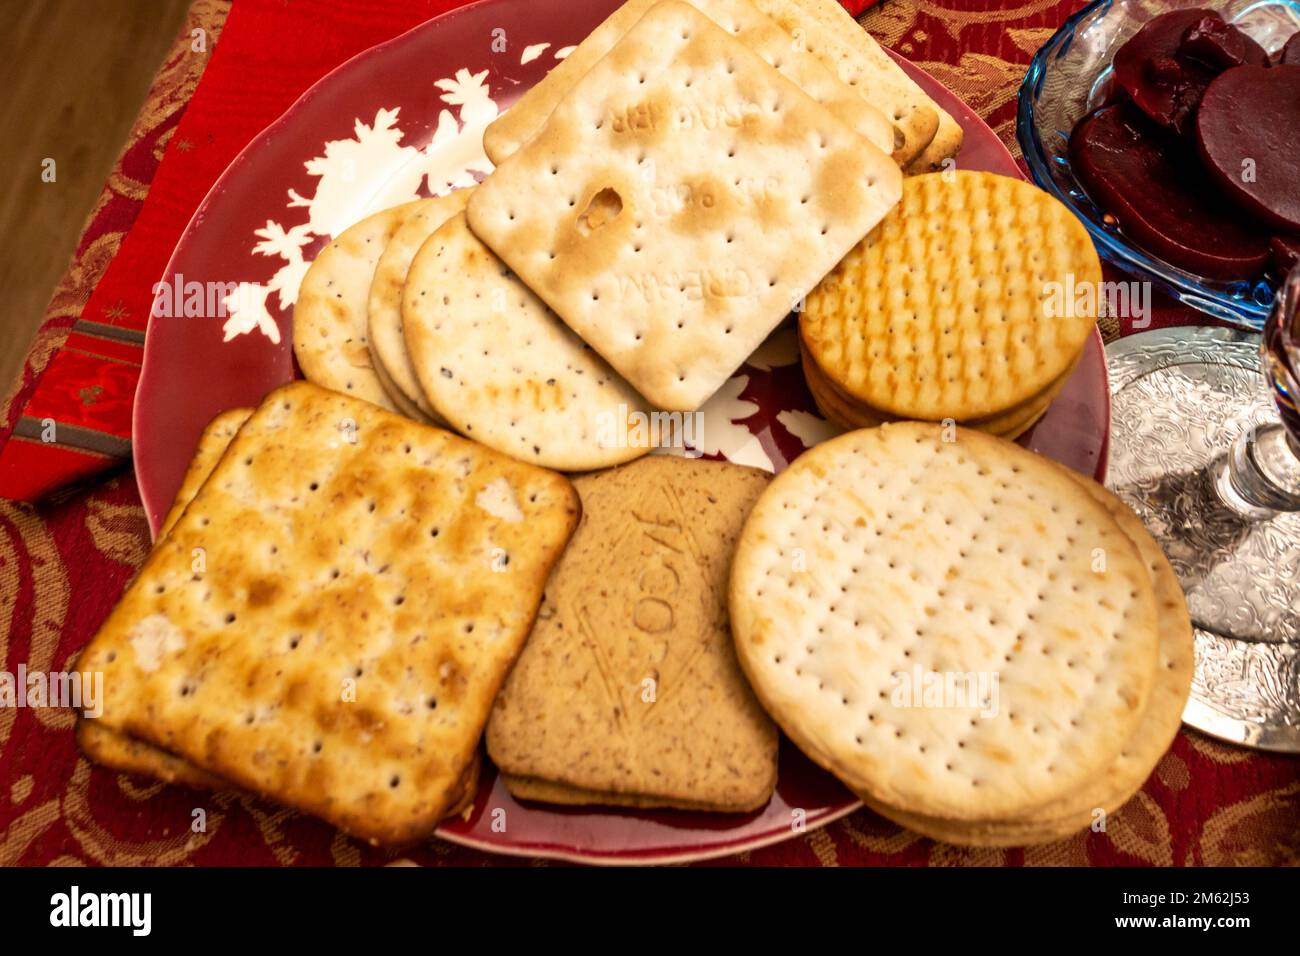 Une sélection de biscuits Jacobs pour le fromage sur une assiette sur une table. Banque D'Images